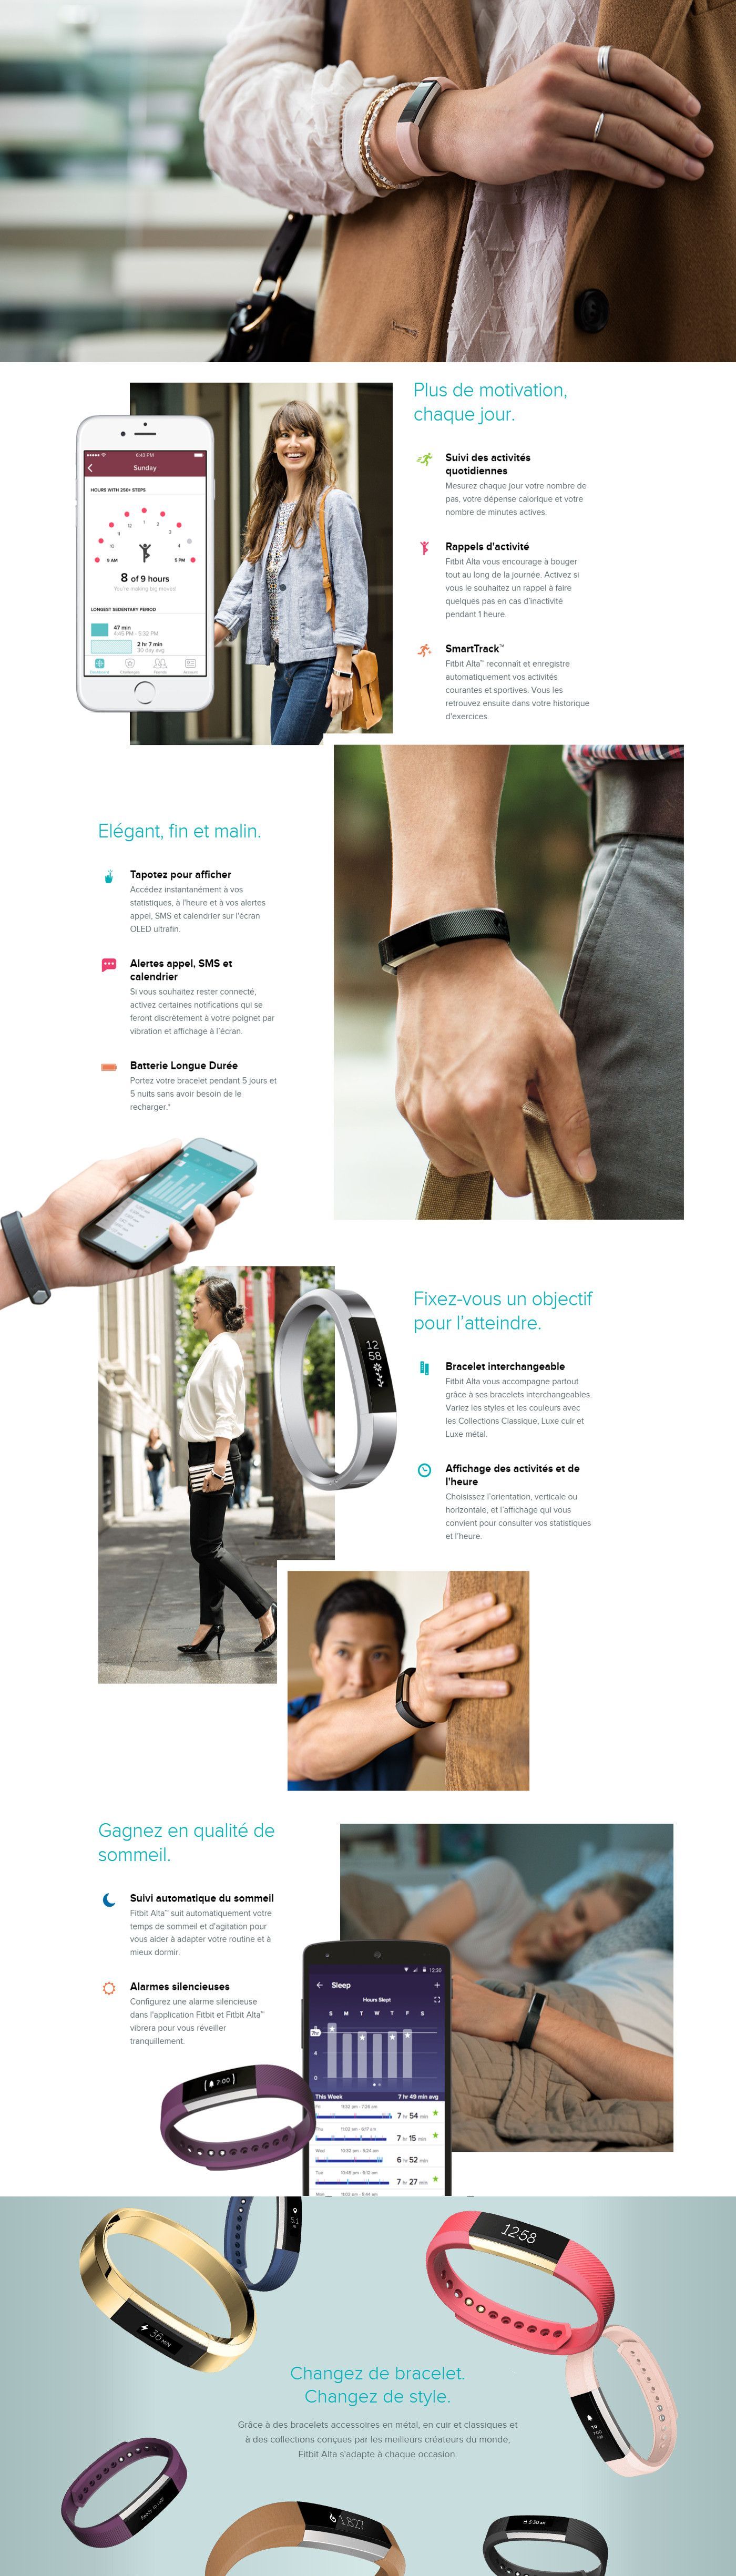 Fitbit Alta  Un bracelet connecté qui prend soin de votre forme et votre look - Chez Gift.Ma Boutique des cadeaux aux meilleurs prix en ligne au Maroc